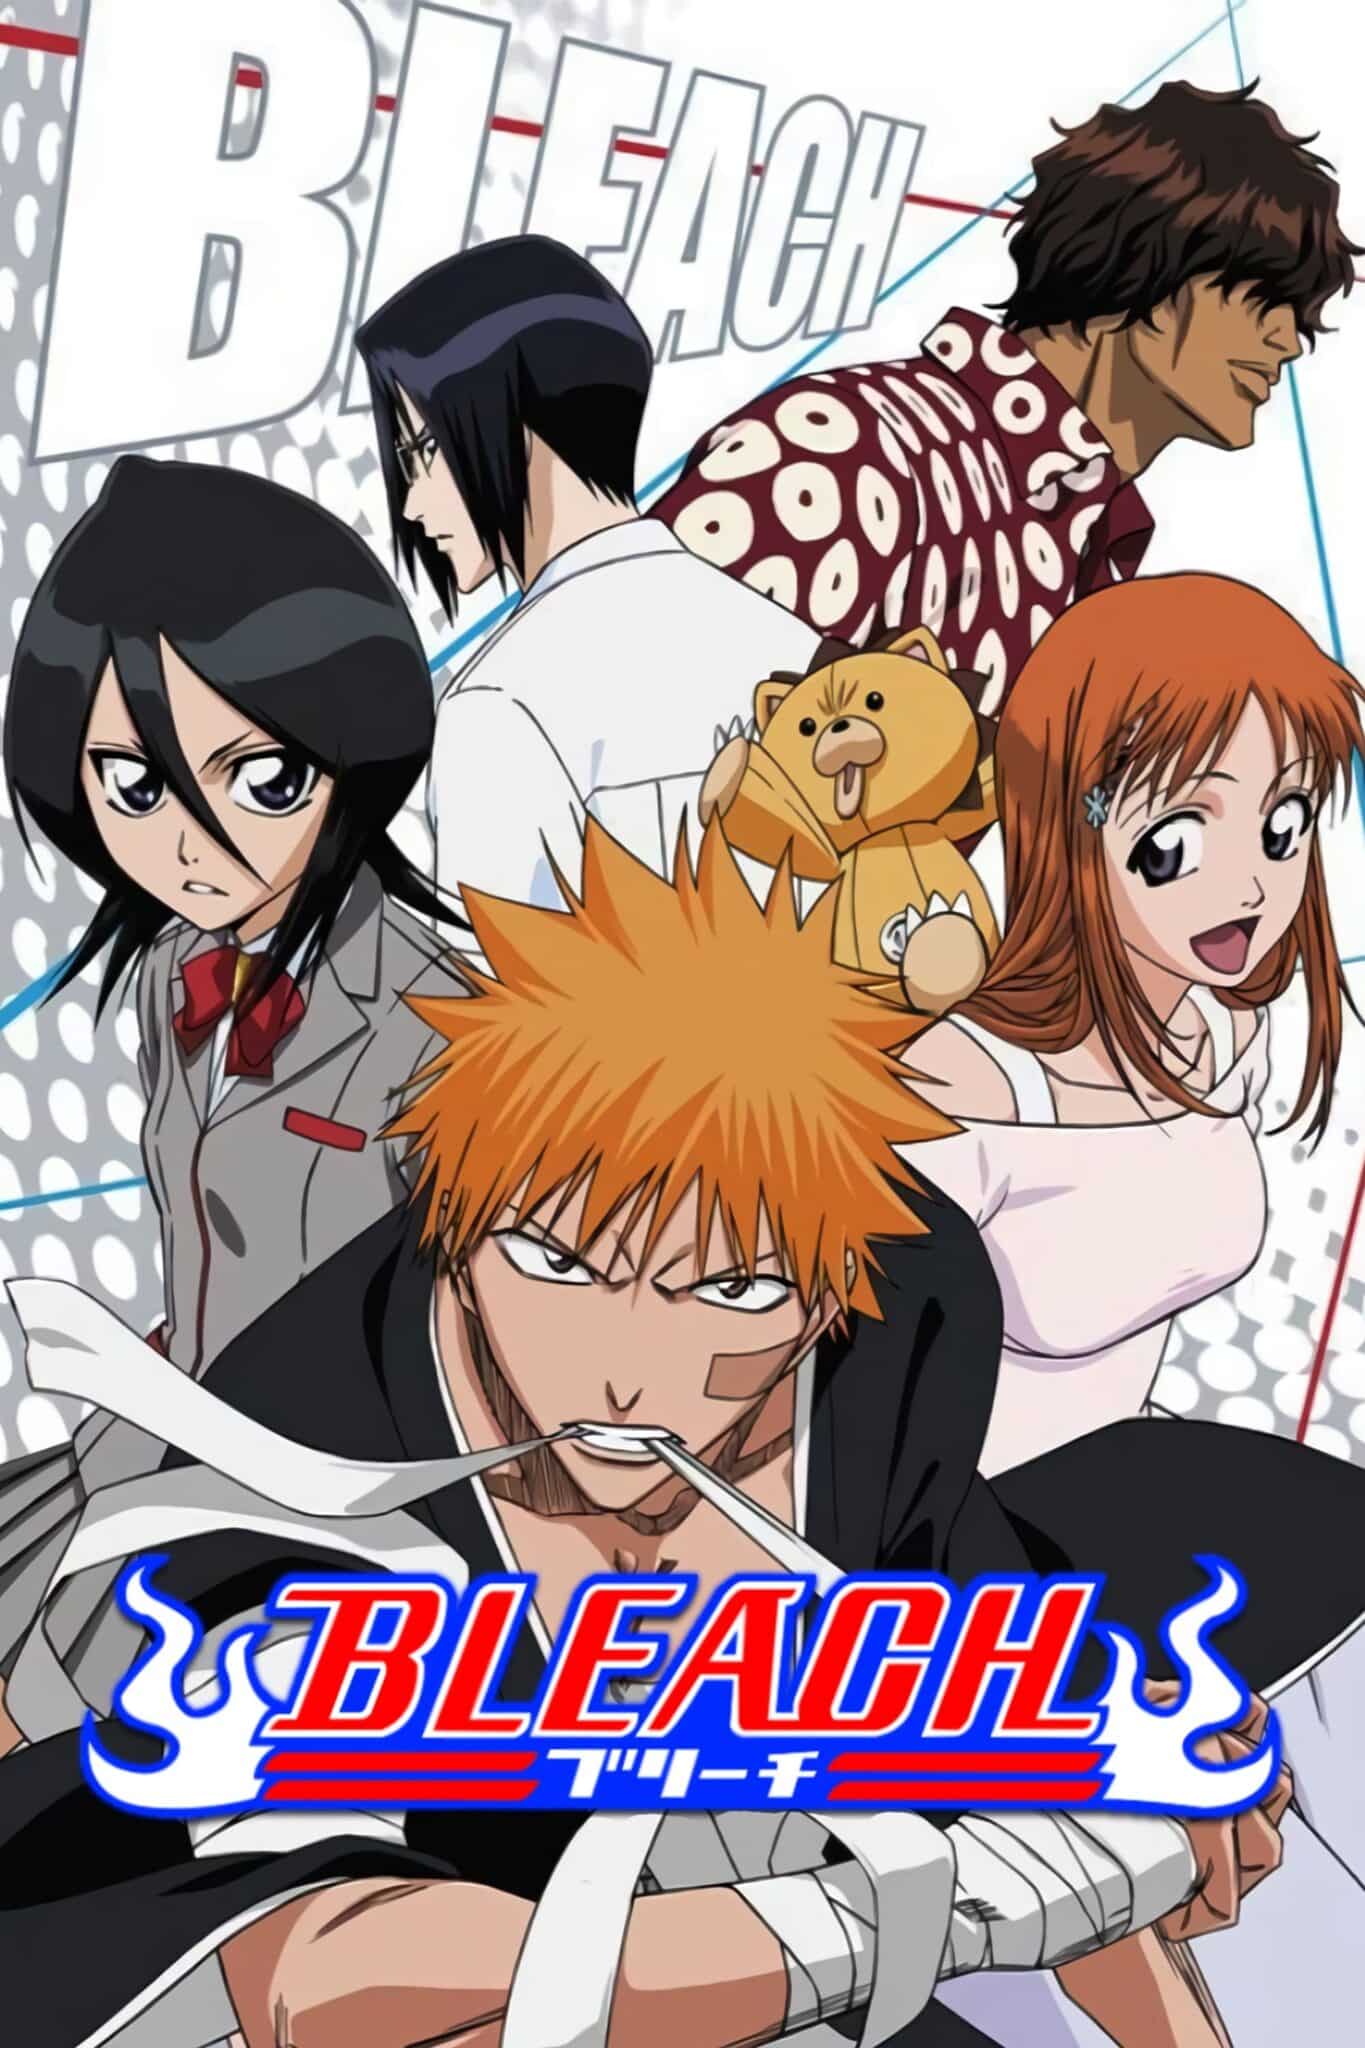 Bleach anime sequel